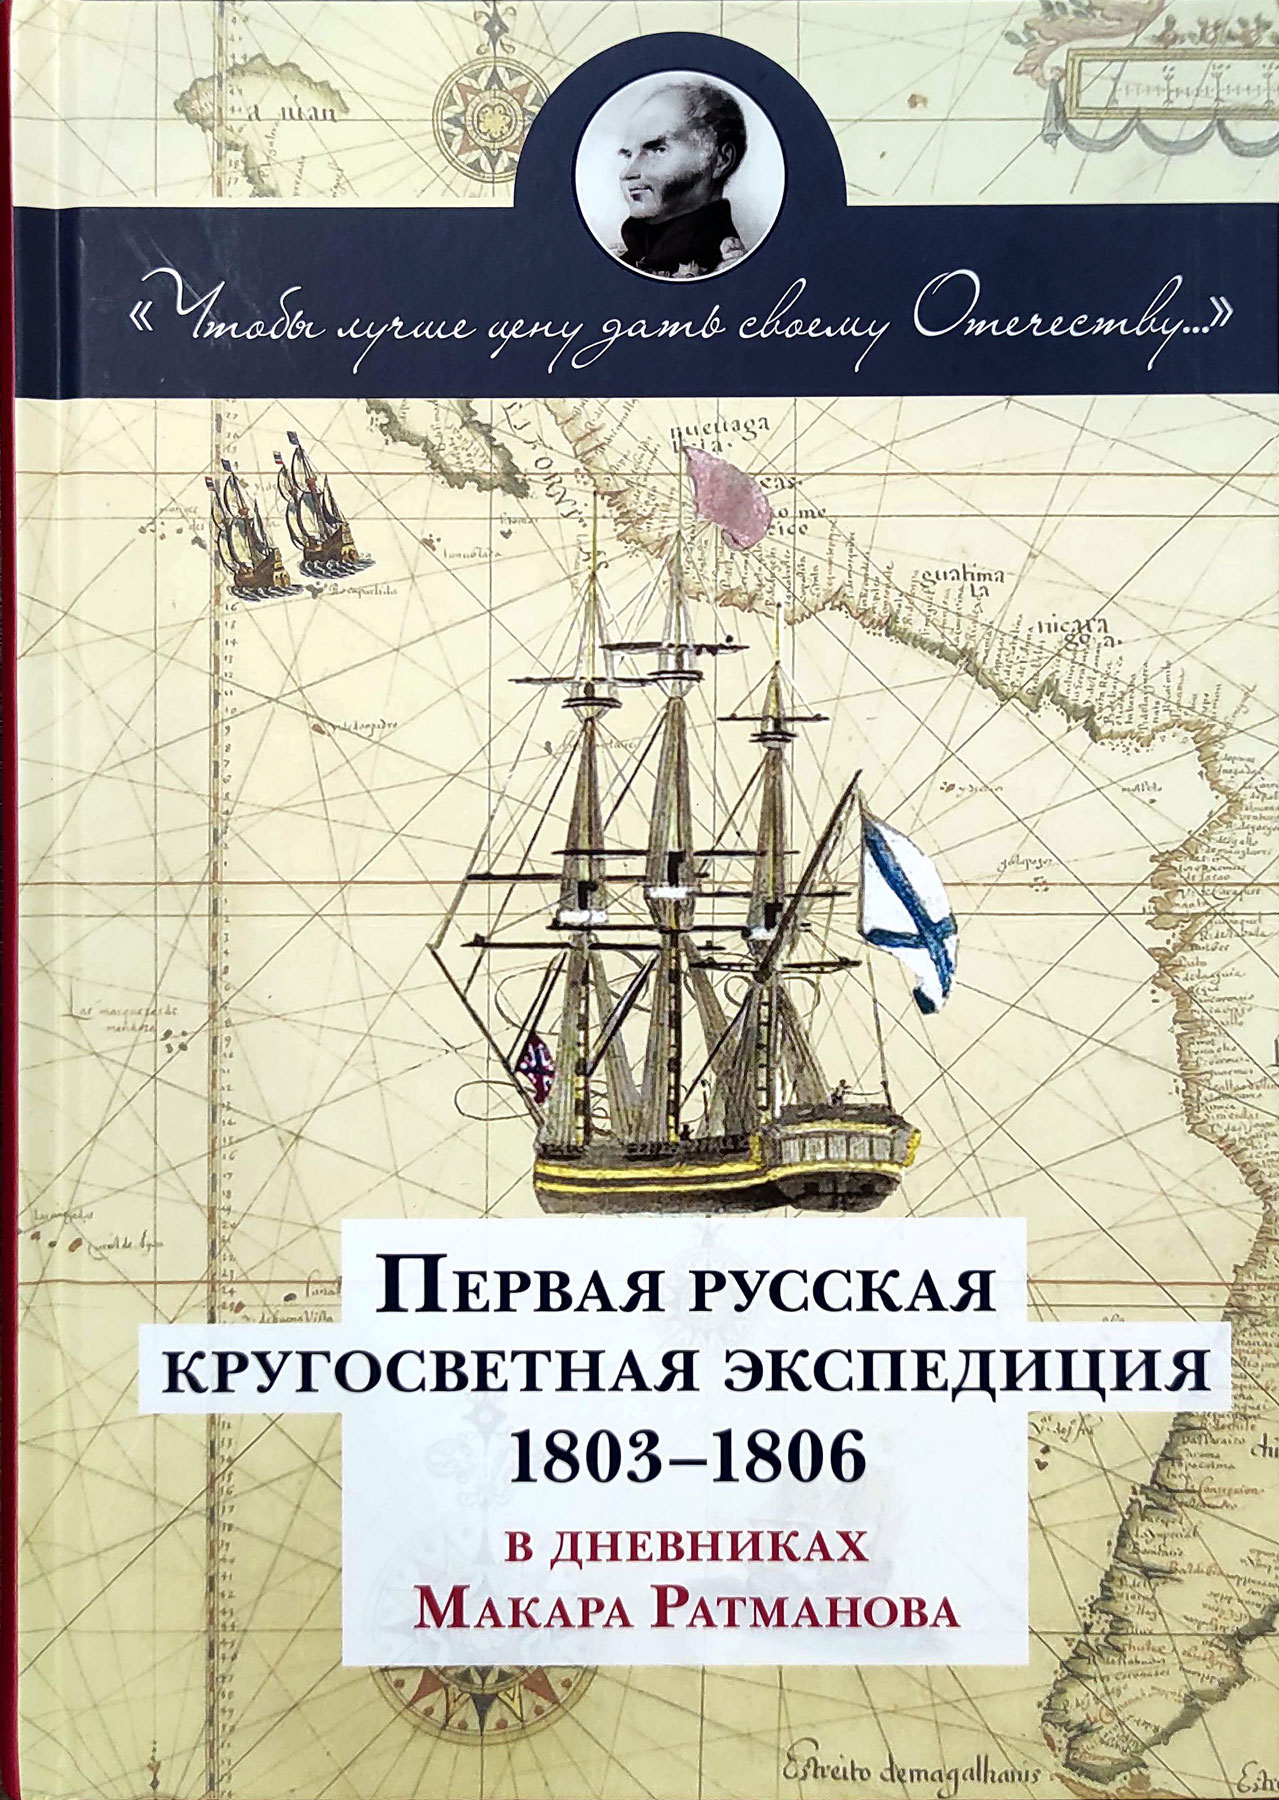     1803-1806    